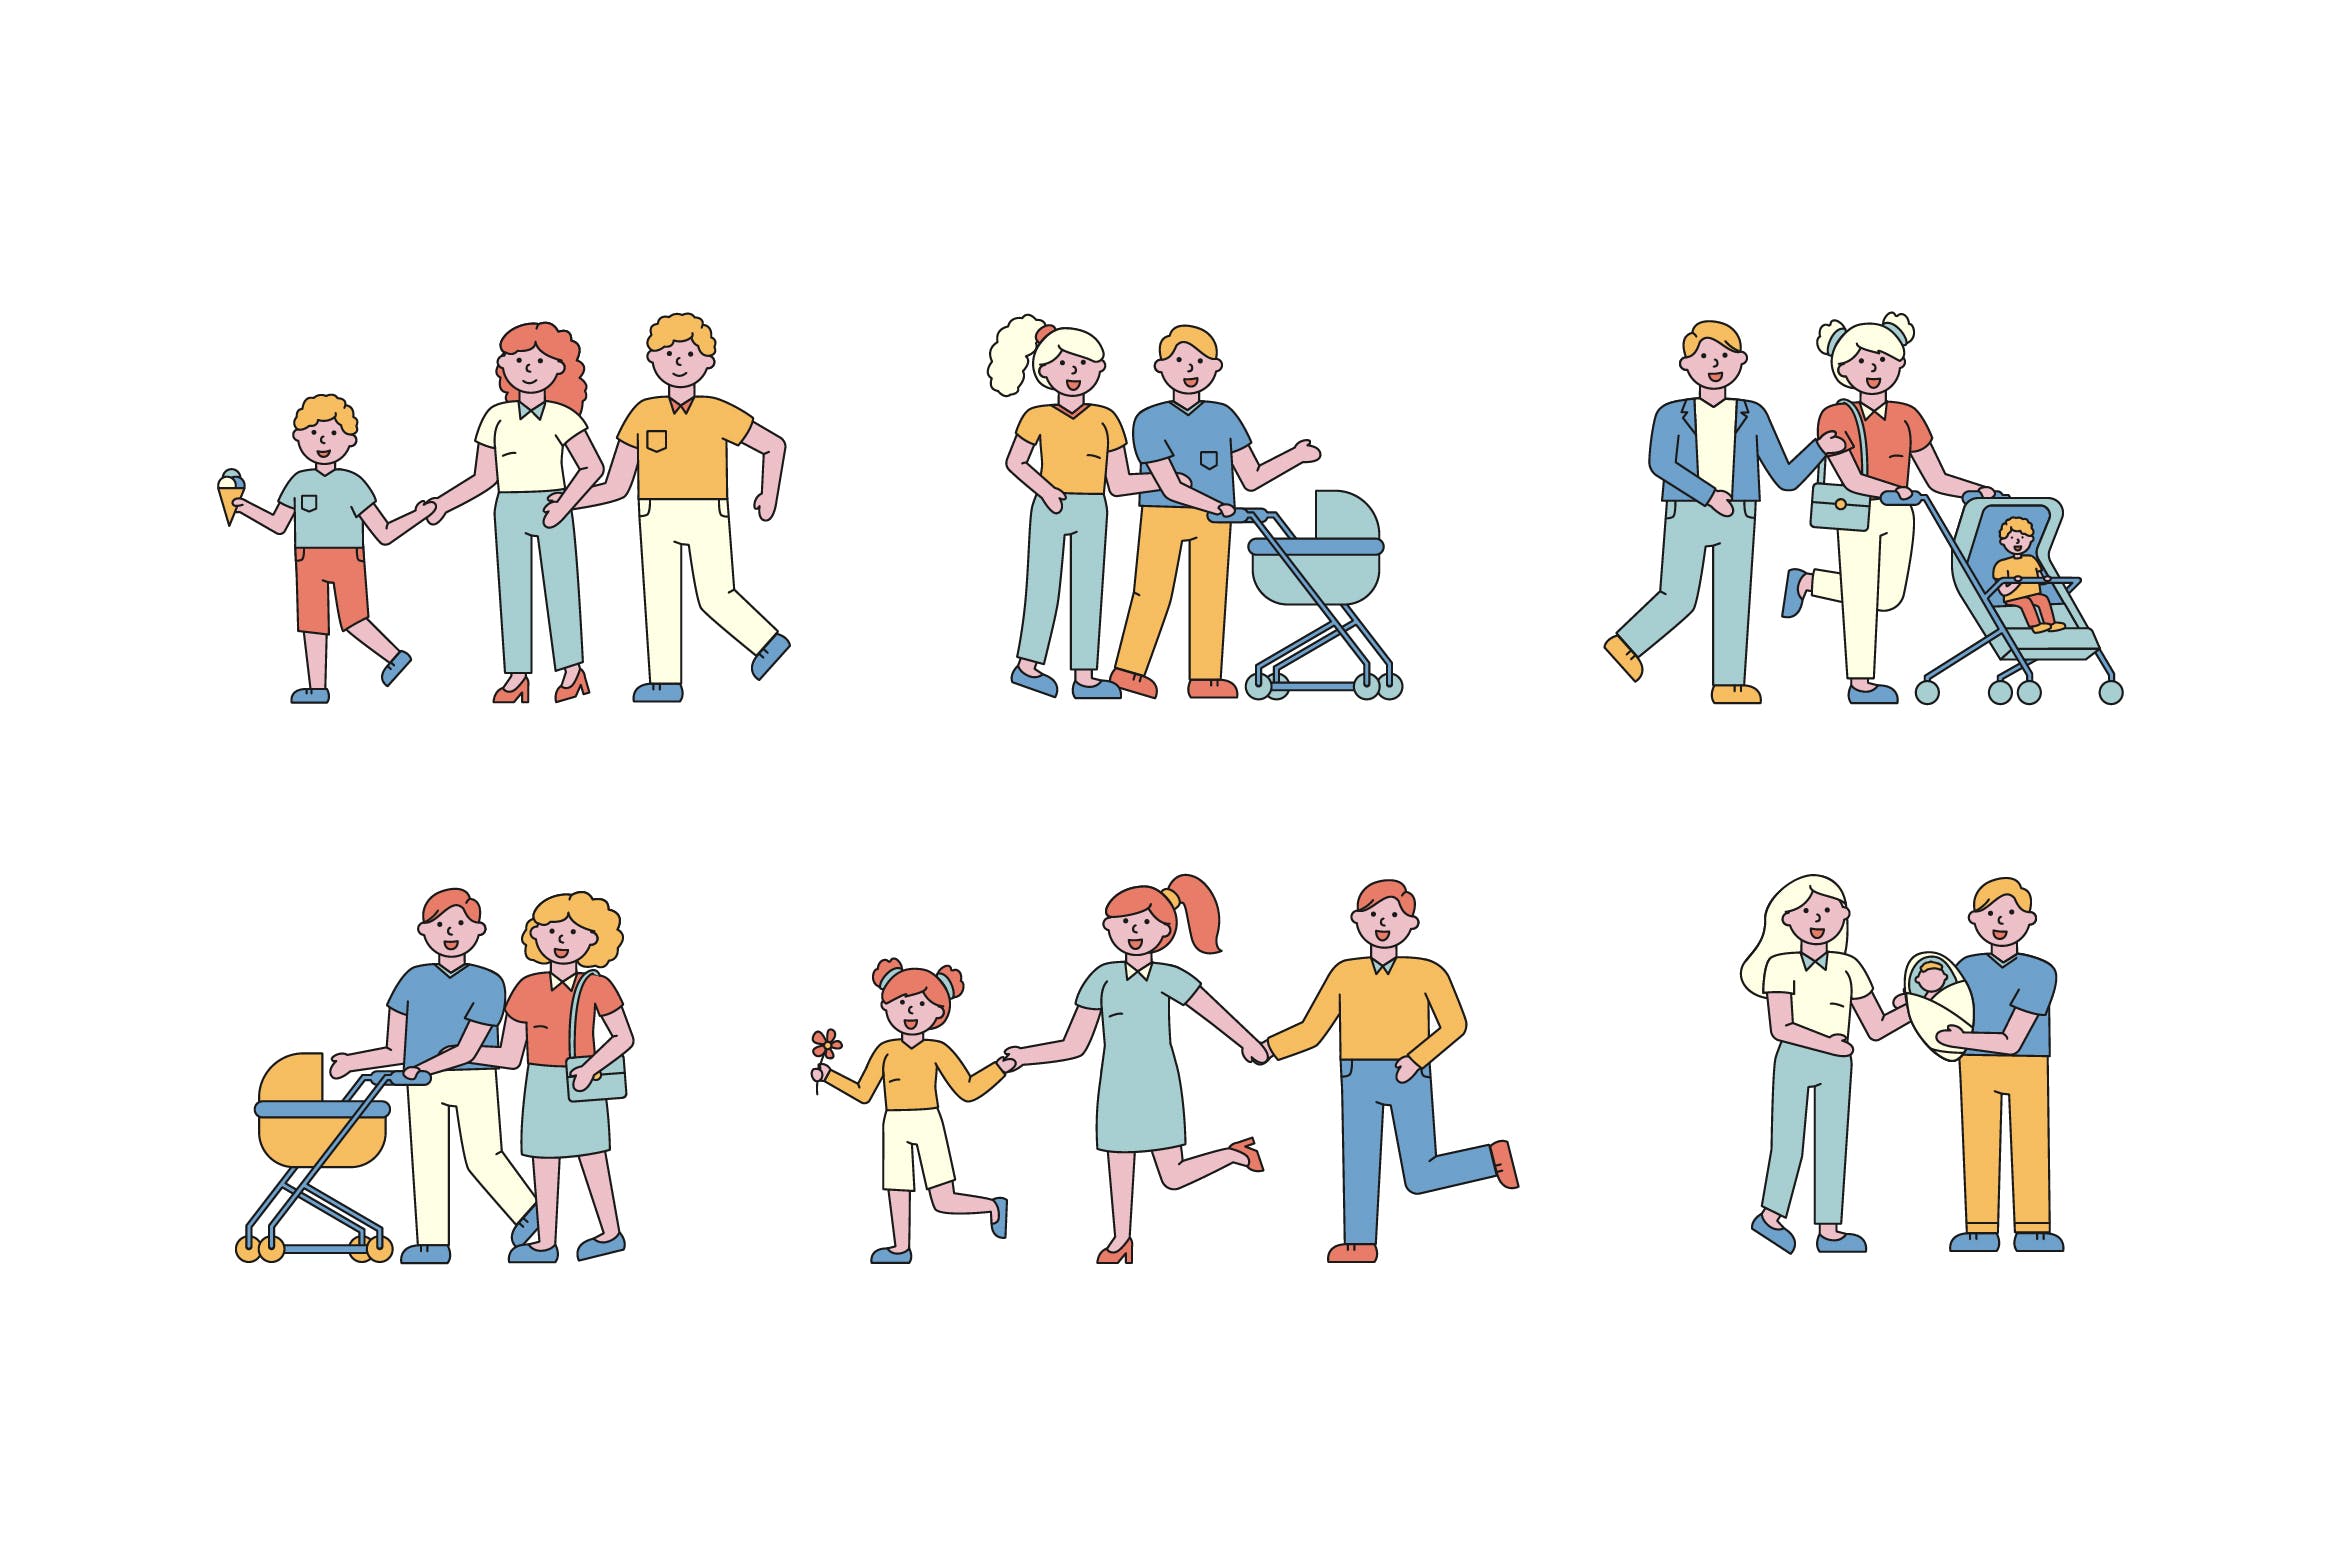 亲子活动主题人物形象线条艺术矢量插画非凡图库精选素材 Family Lineart People Character Collection插图